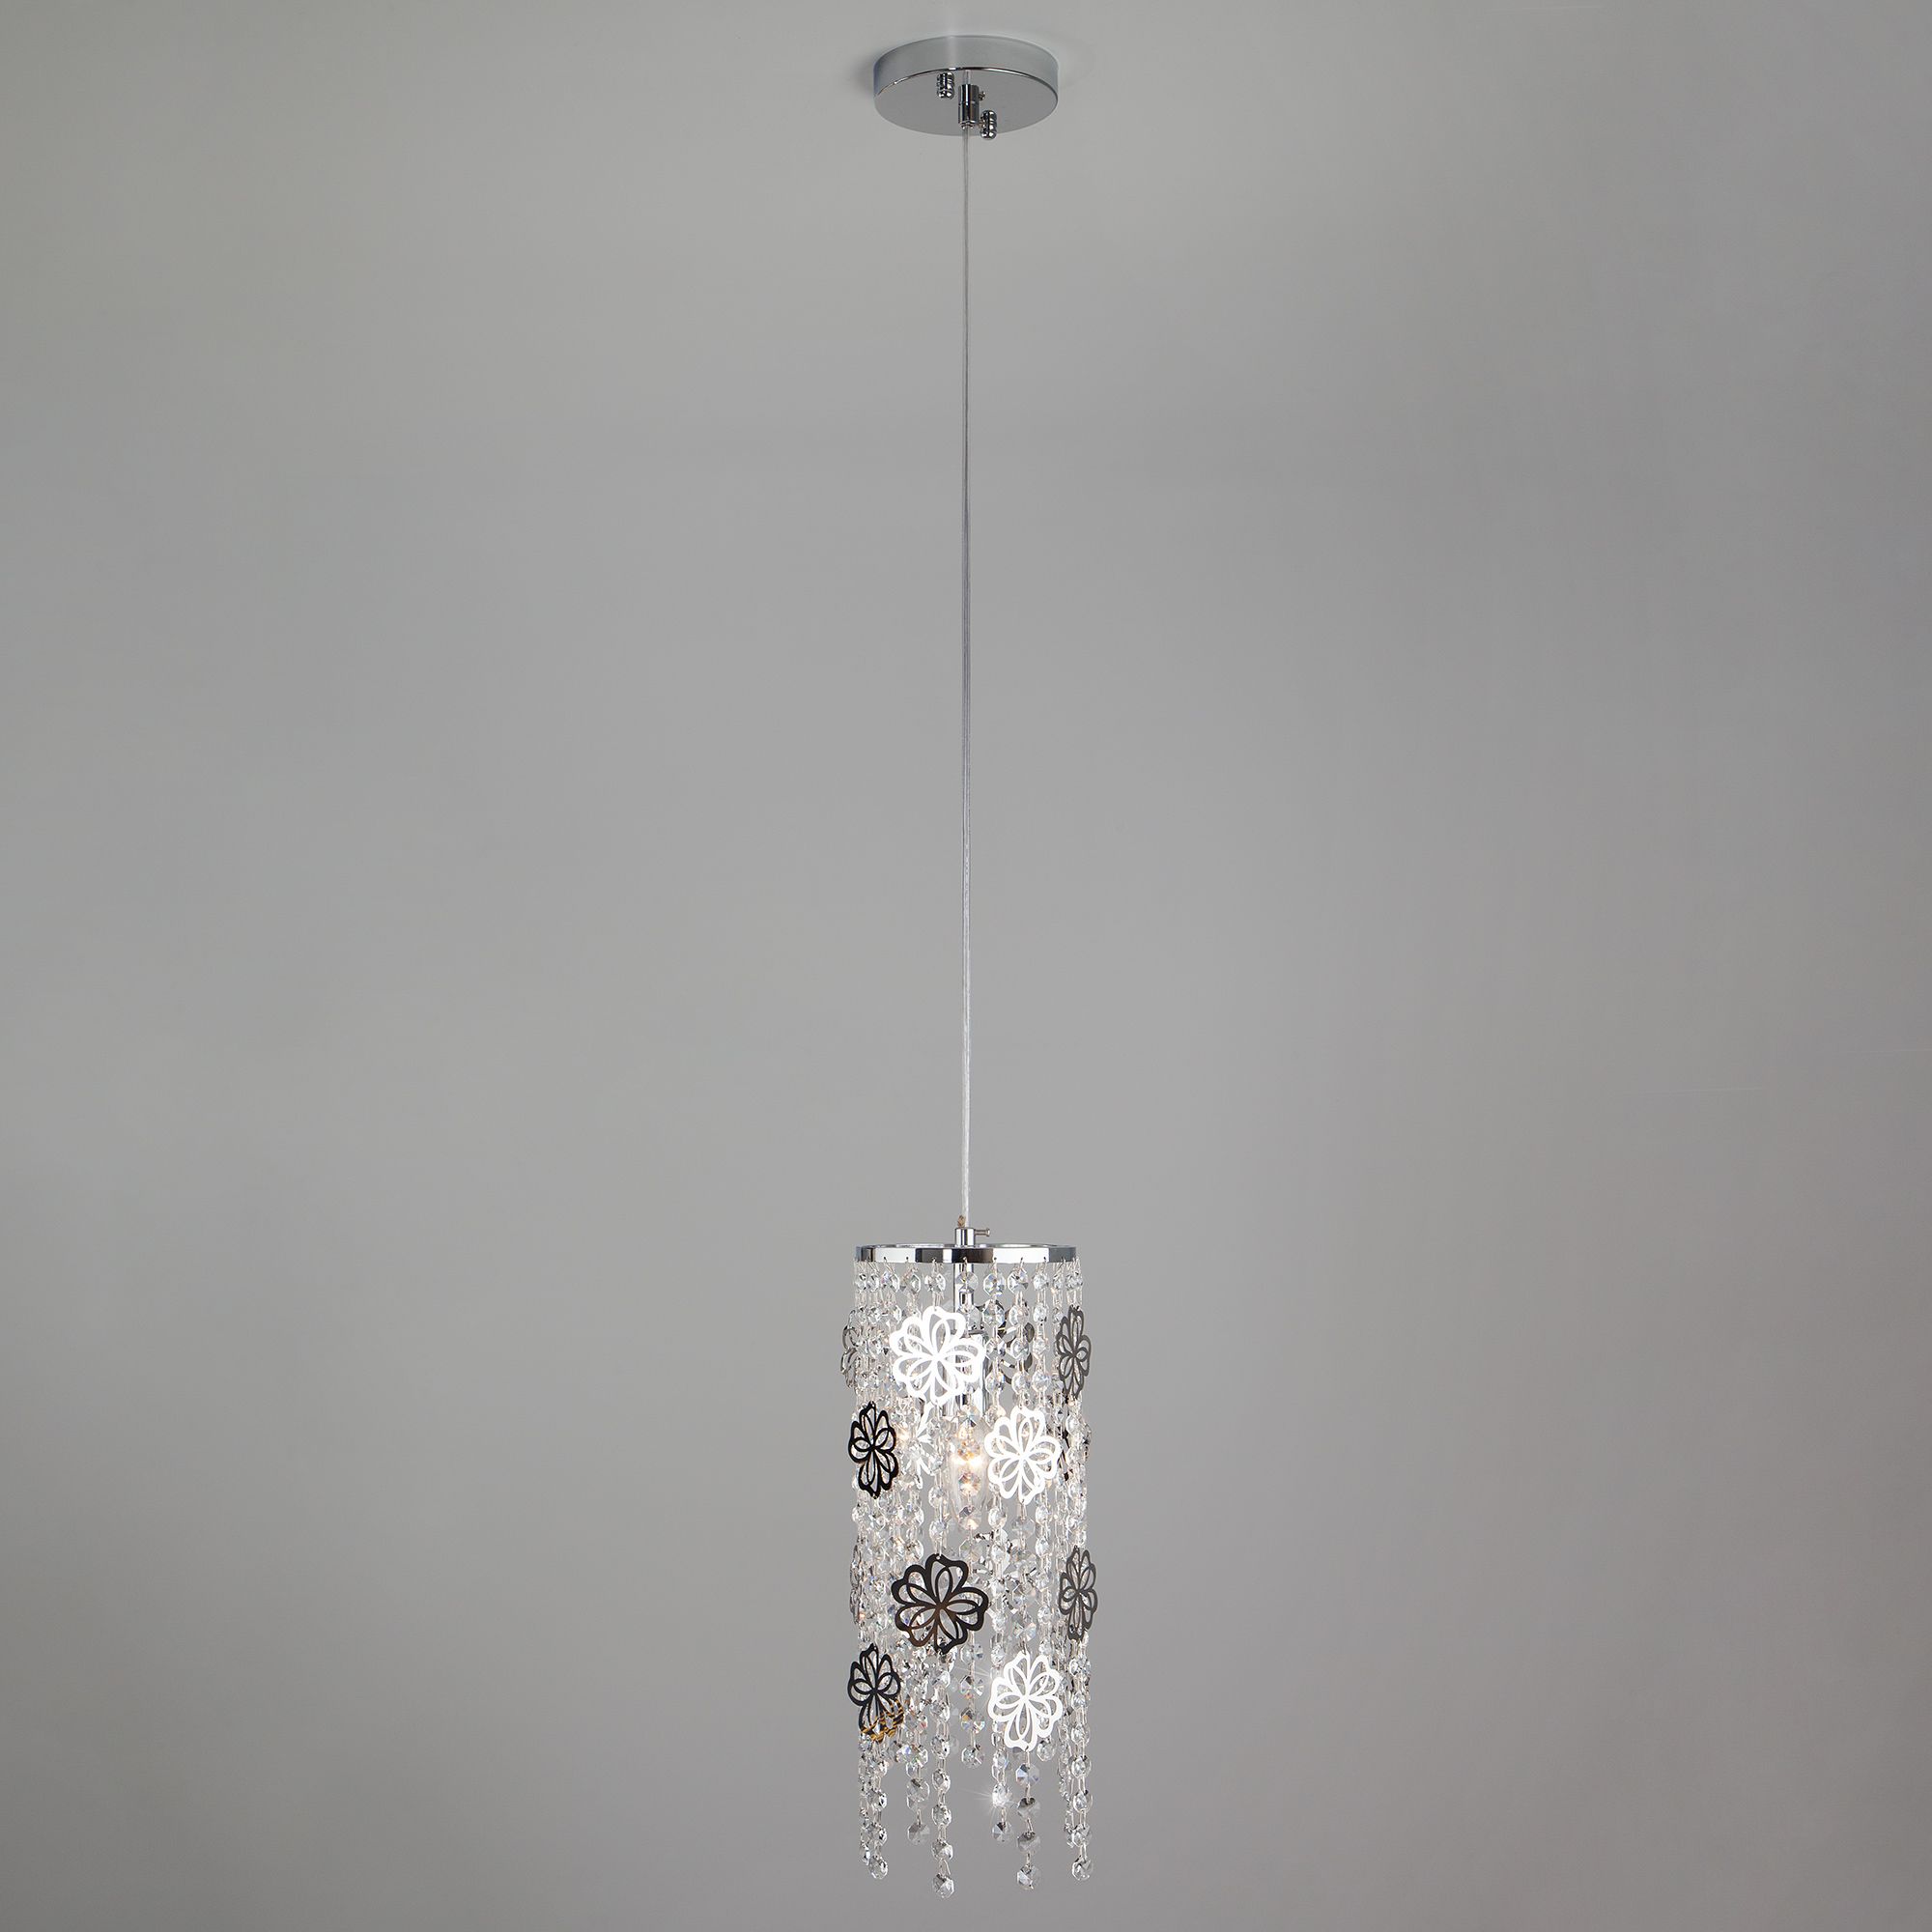 Подвесной светильник с хрусталем Eurosvet Flower 10083/1 хром / прозрачный хрусталь. Фото 2